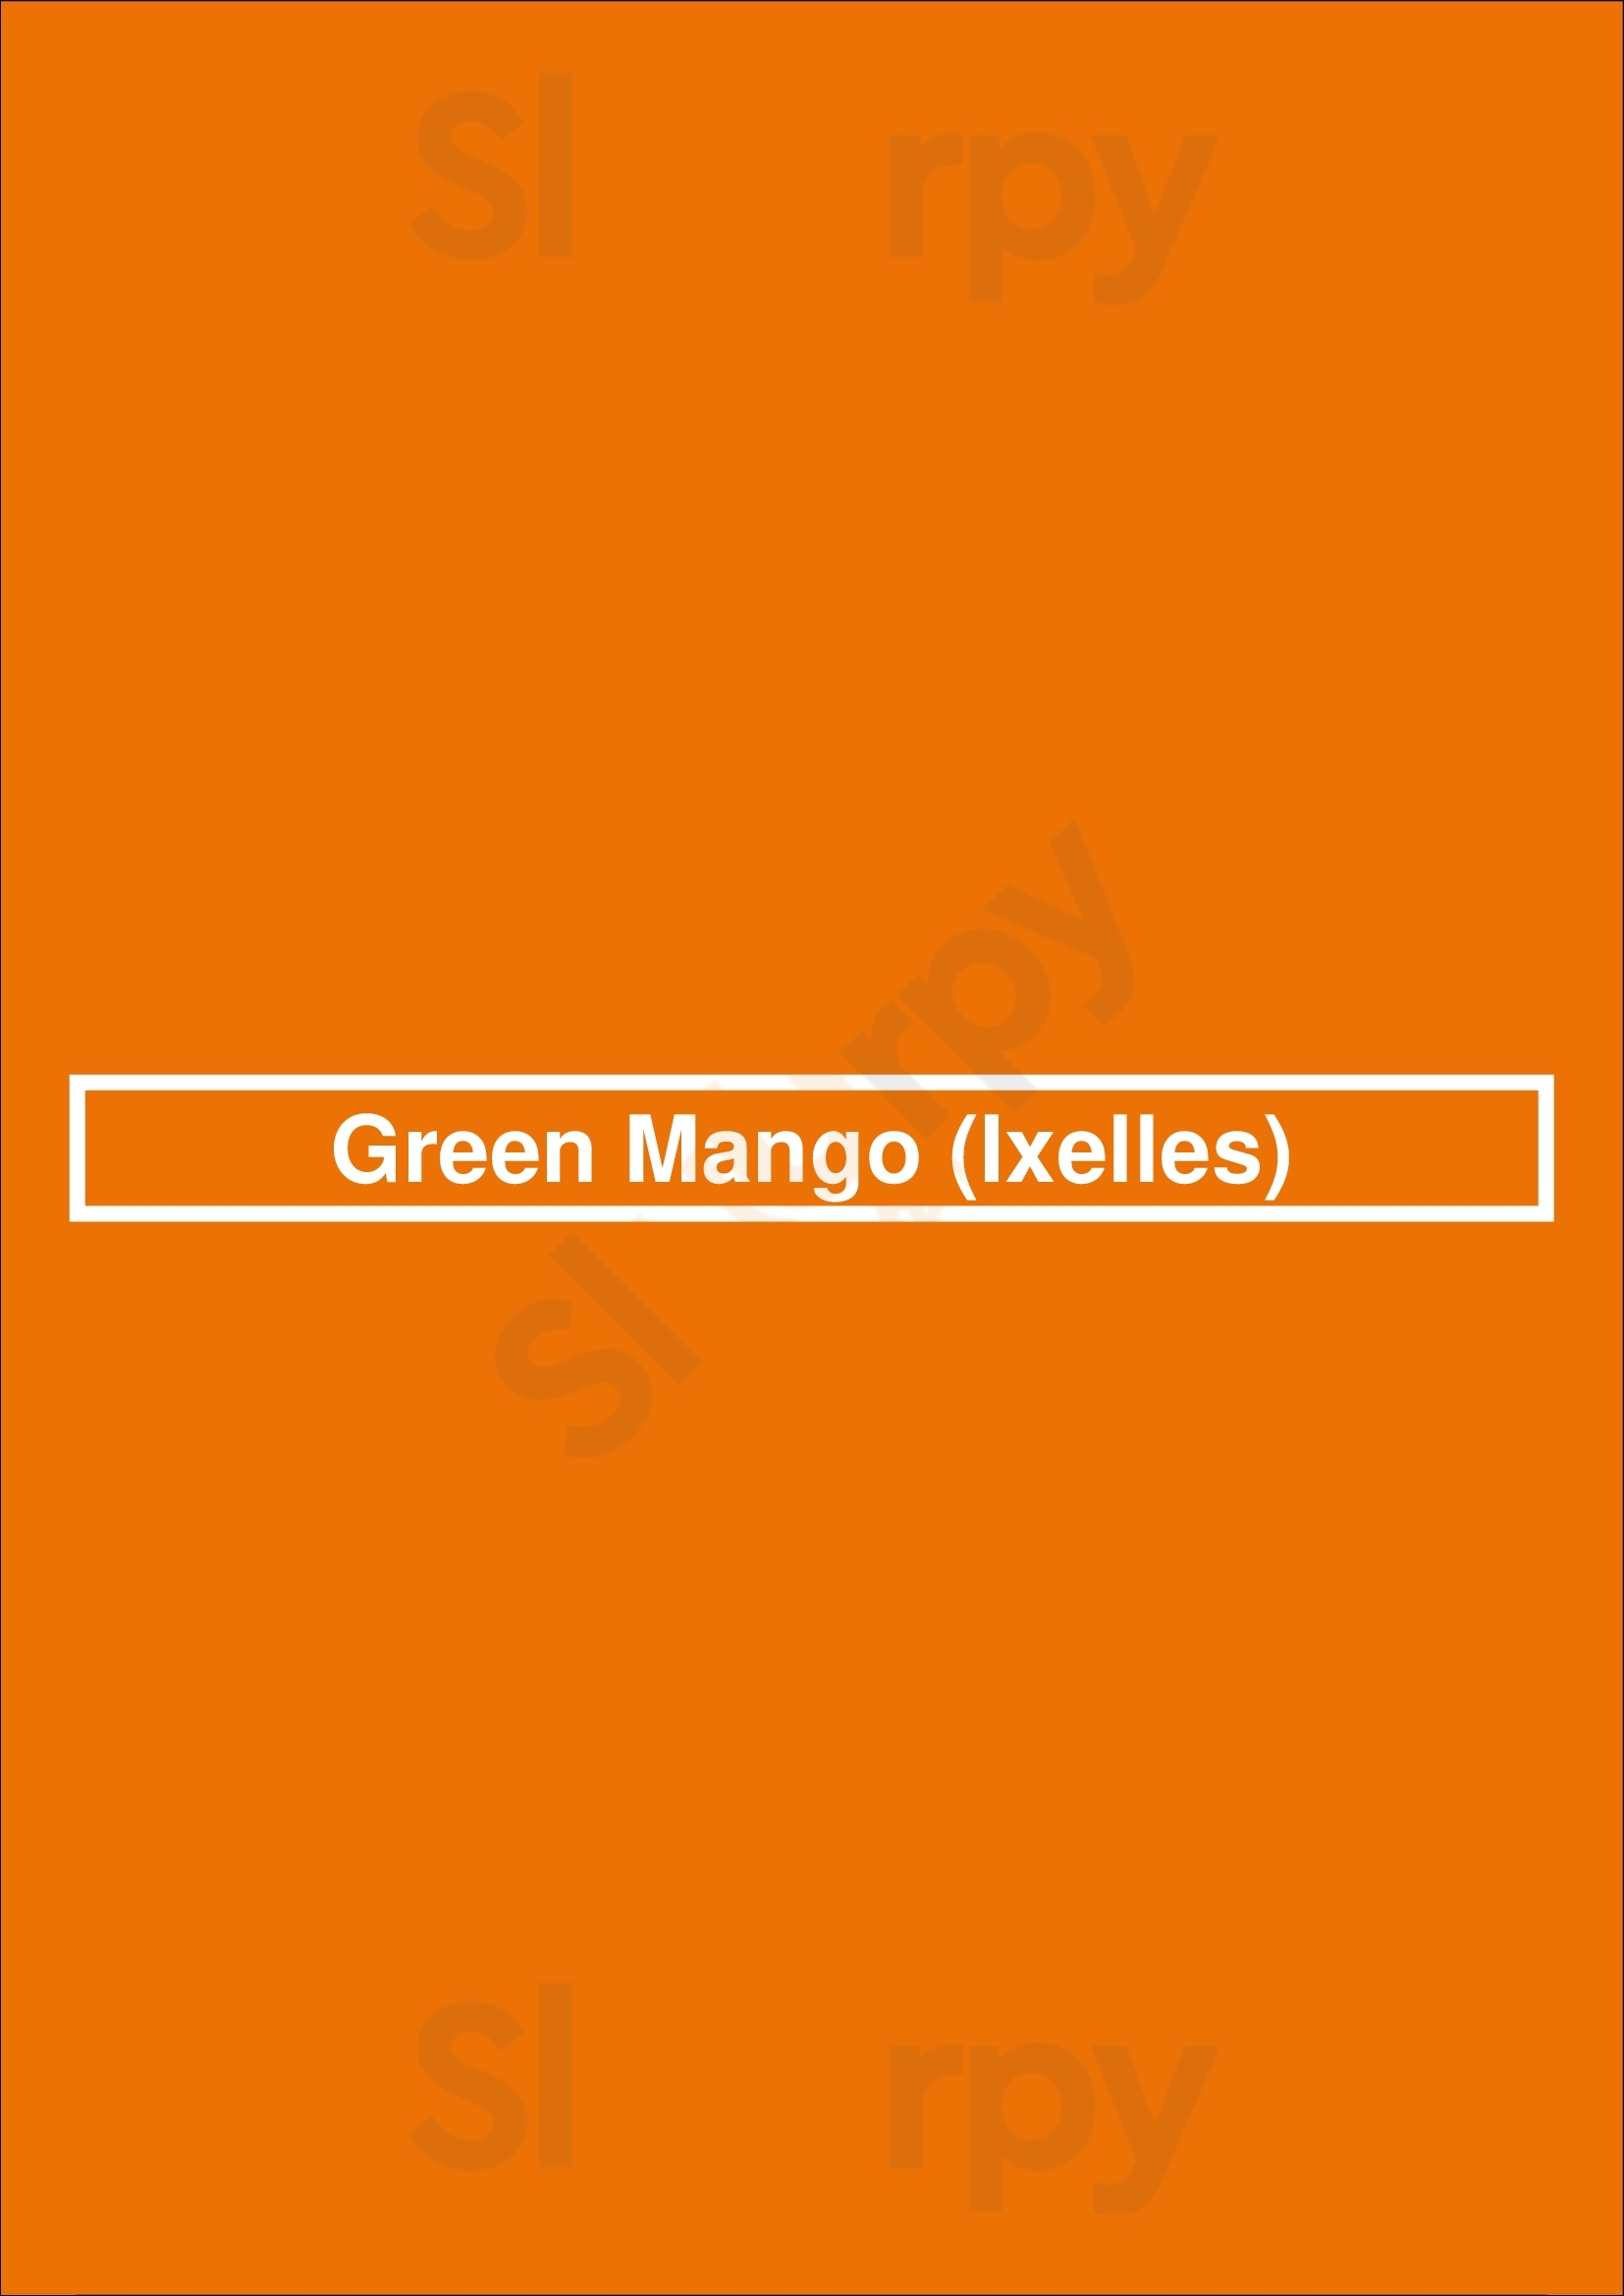 Green Mango Ixelles Bruxelles Menu - 1